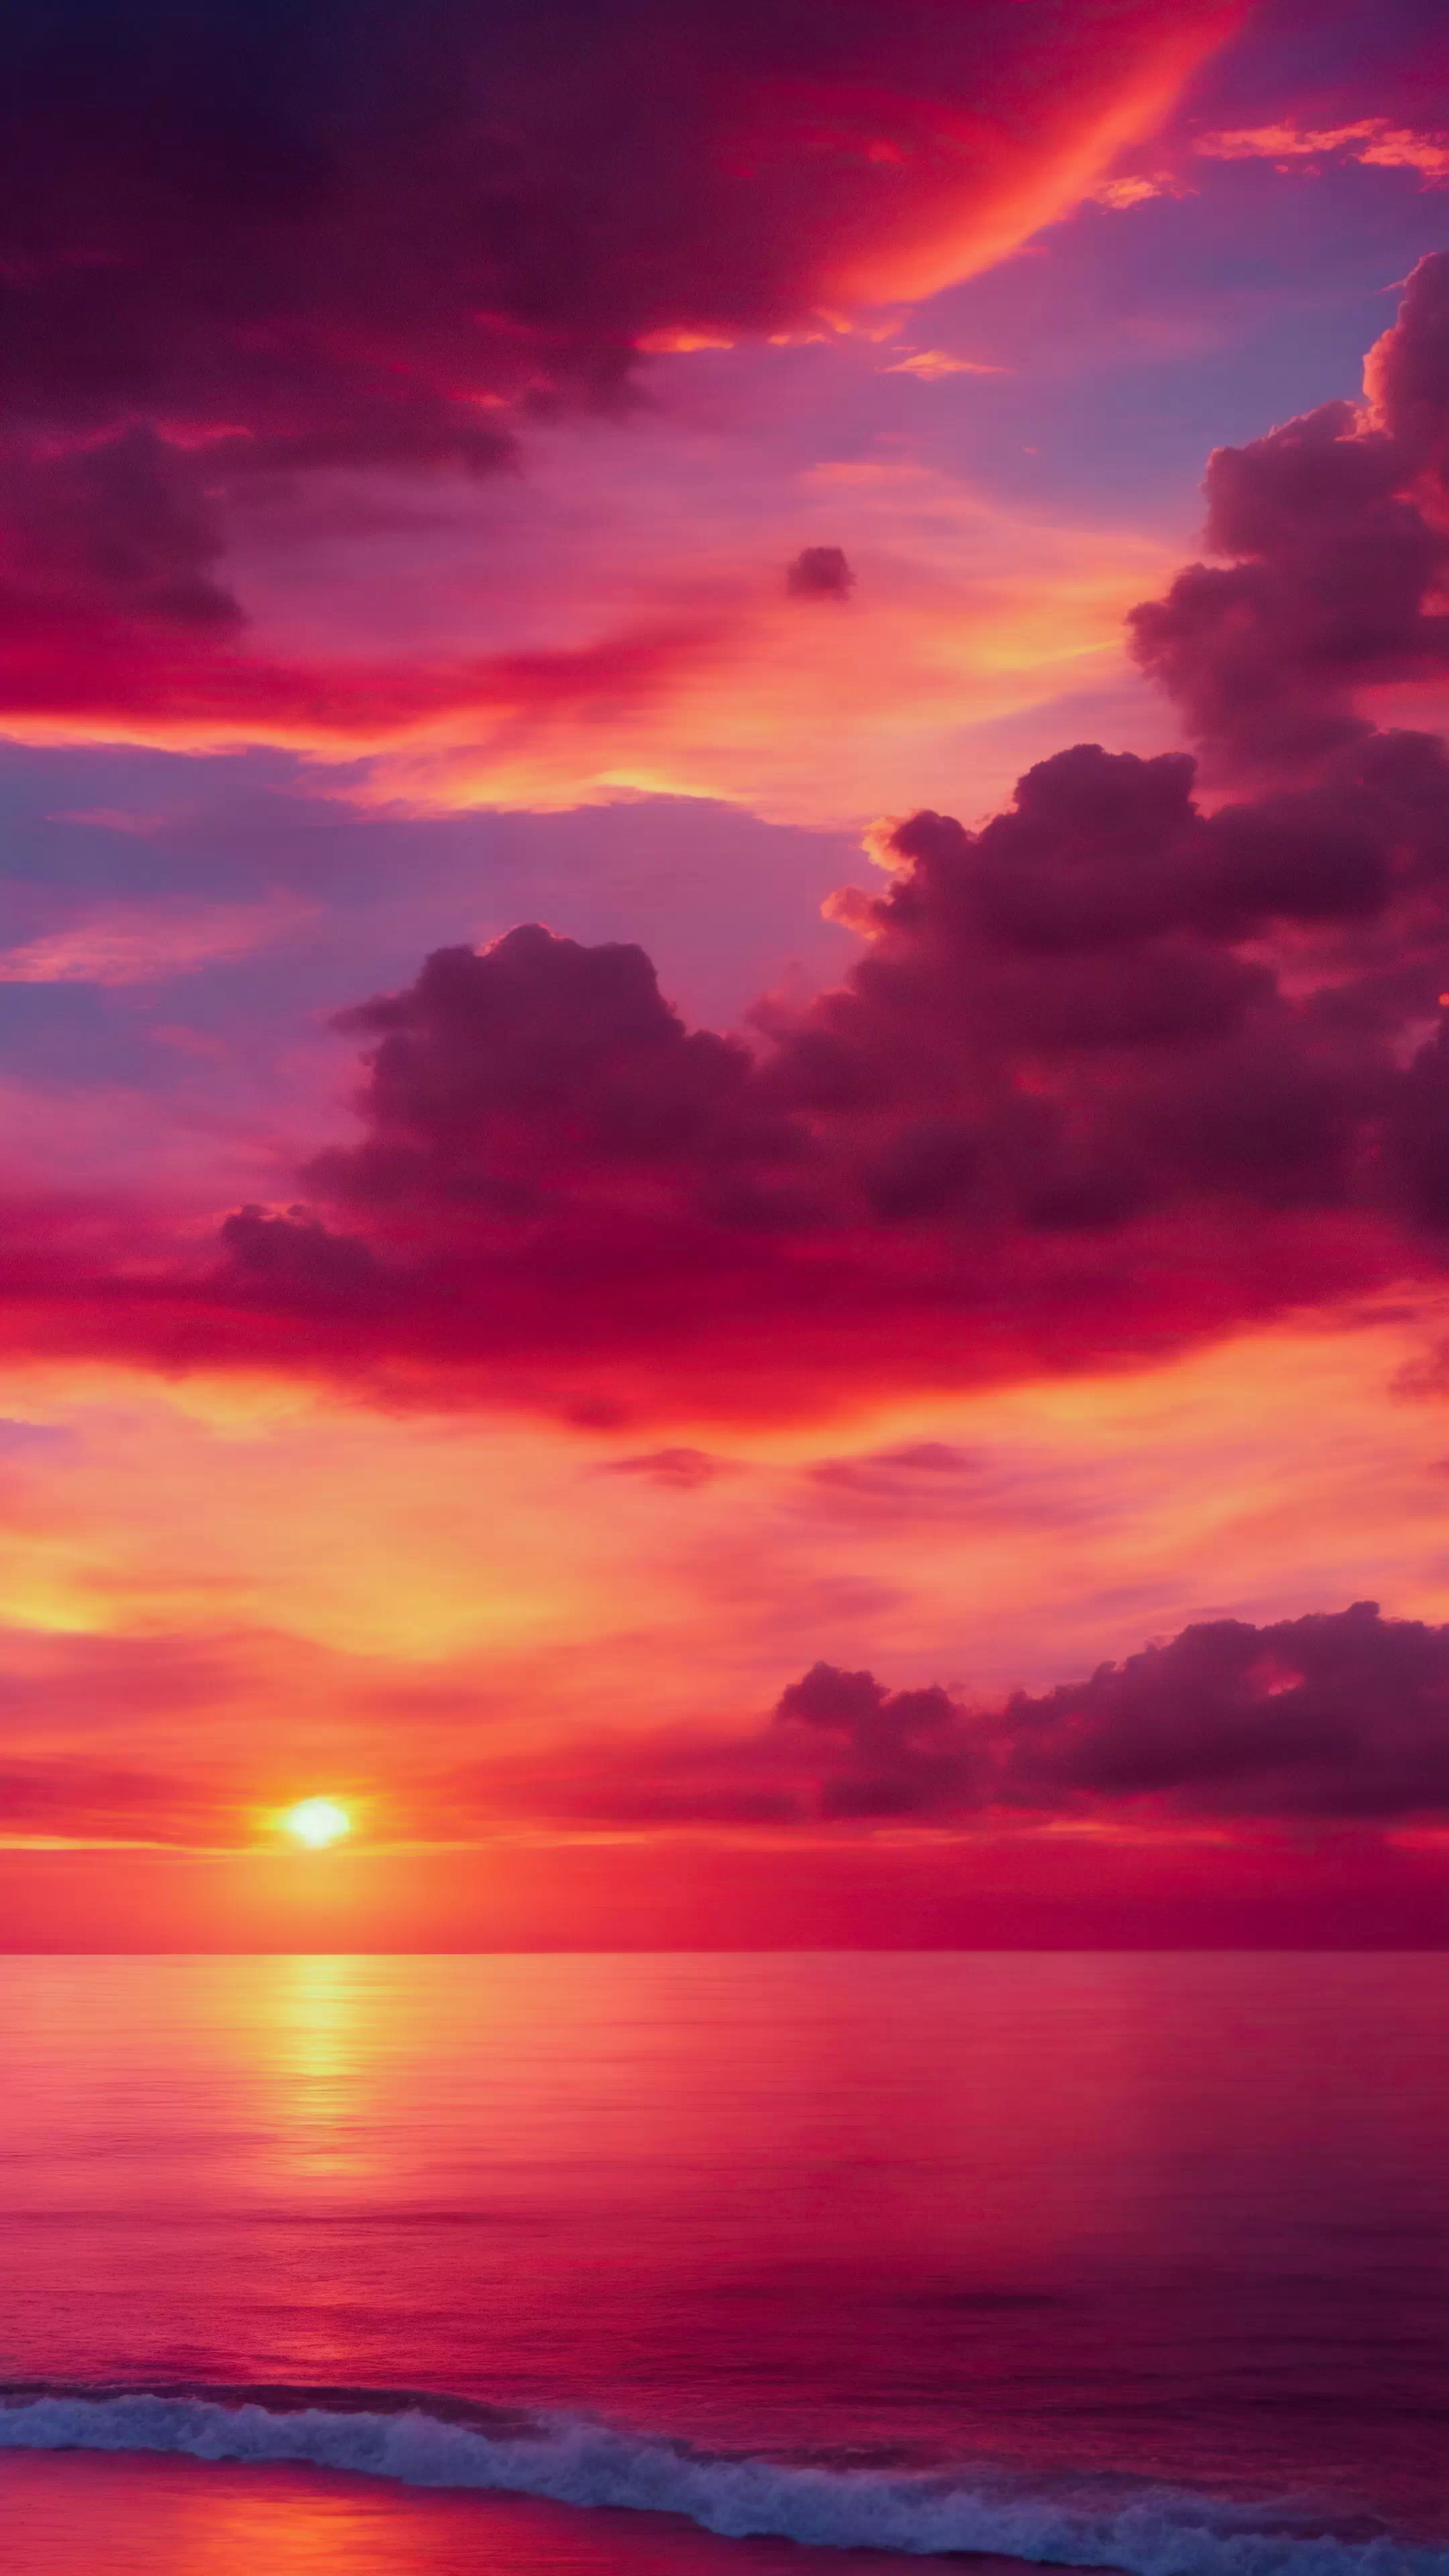 Vivez le spectacle d'un coucher de soleil avec notre fond d'écran de nature en HD pour iPhone, présentant des teintes ardentes d'orange et de rose, et laissez votre écran devenir une toile pour les couleurs les plus vibrantes de la nature.